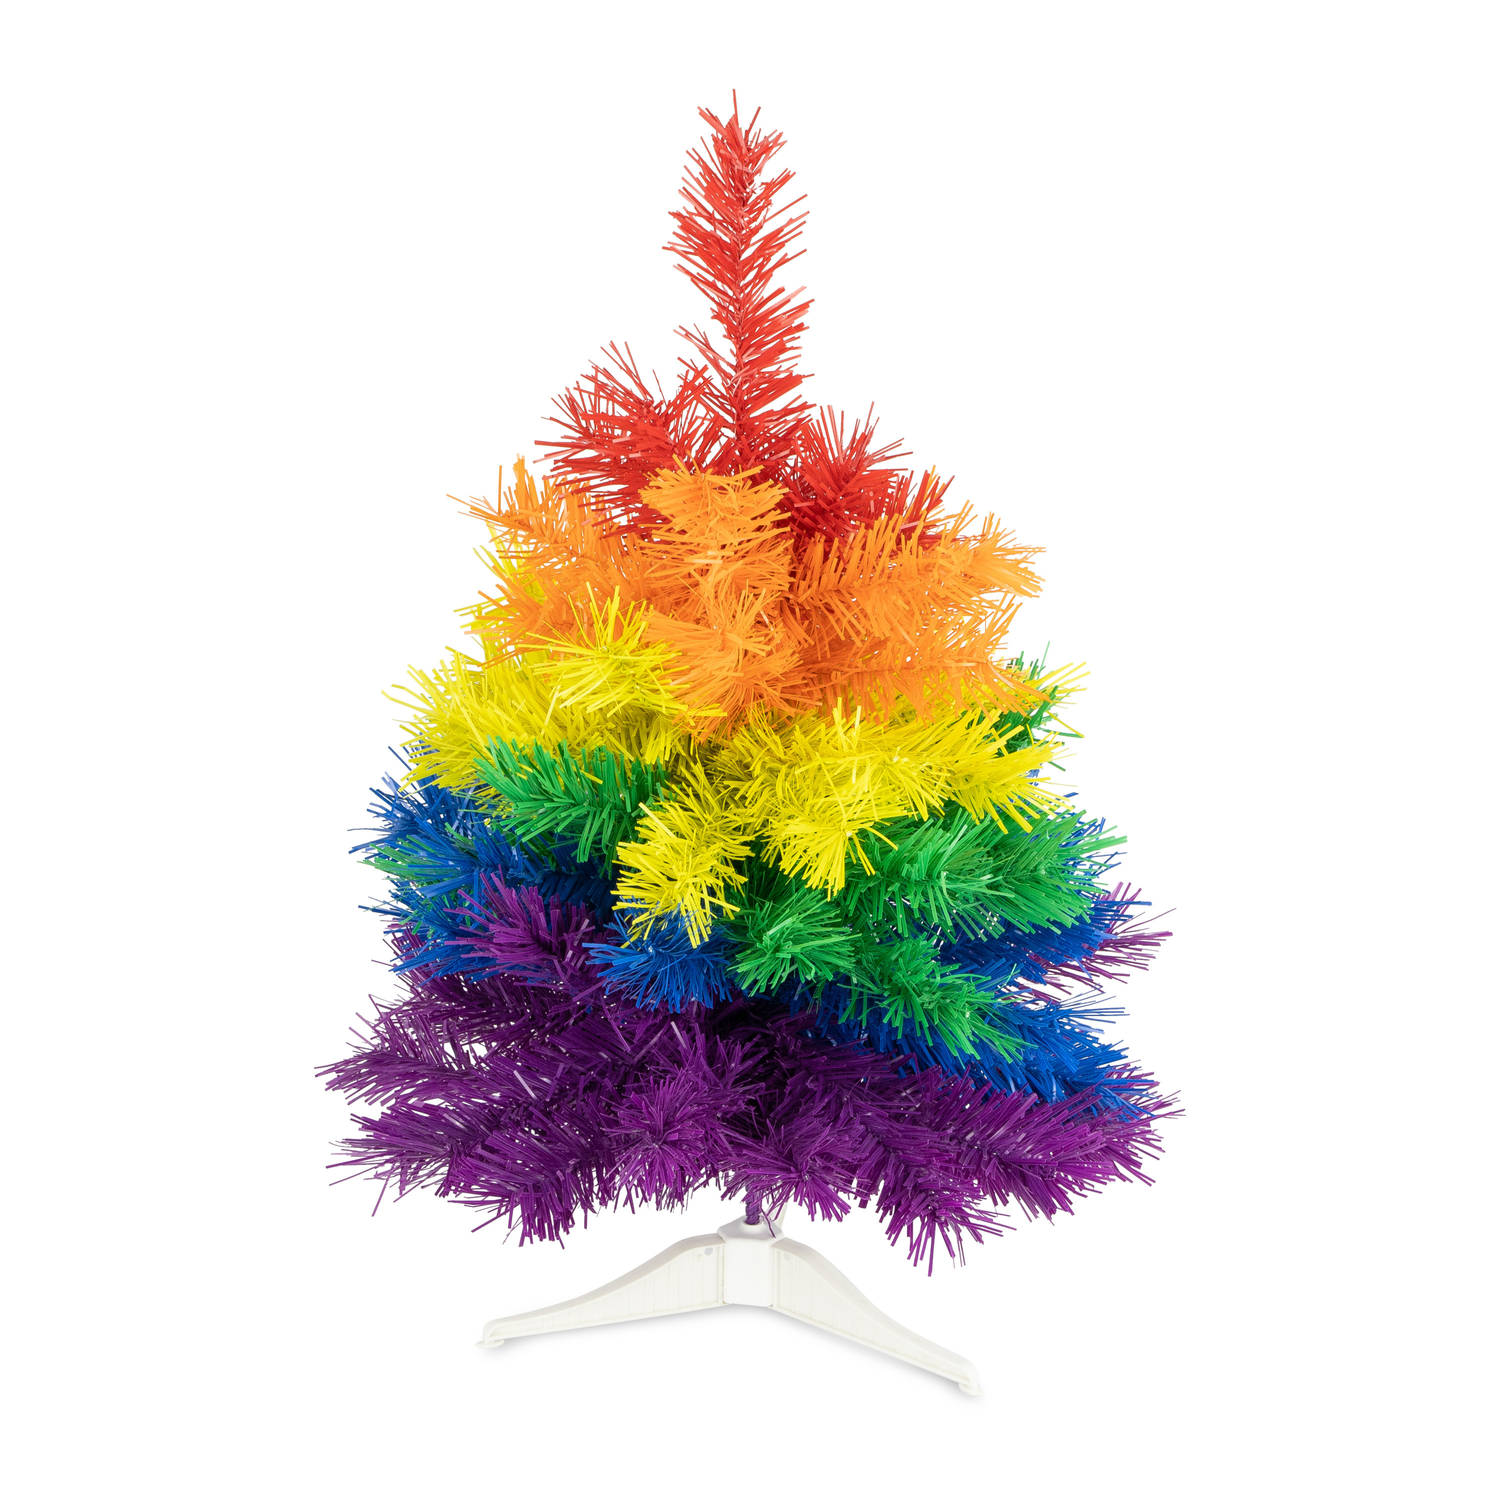 R en W kunst kerstboom klein - regenboog kleuren - H45 cmA?Æ?A¢a?¬A¡A?a??A?A - kunststof - Kunstkerstboom